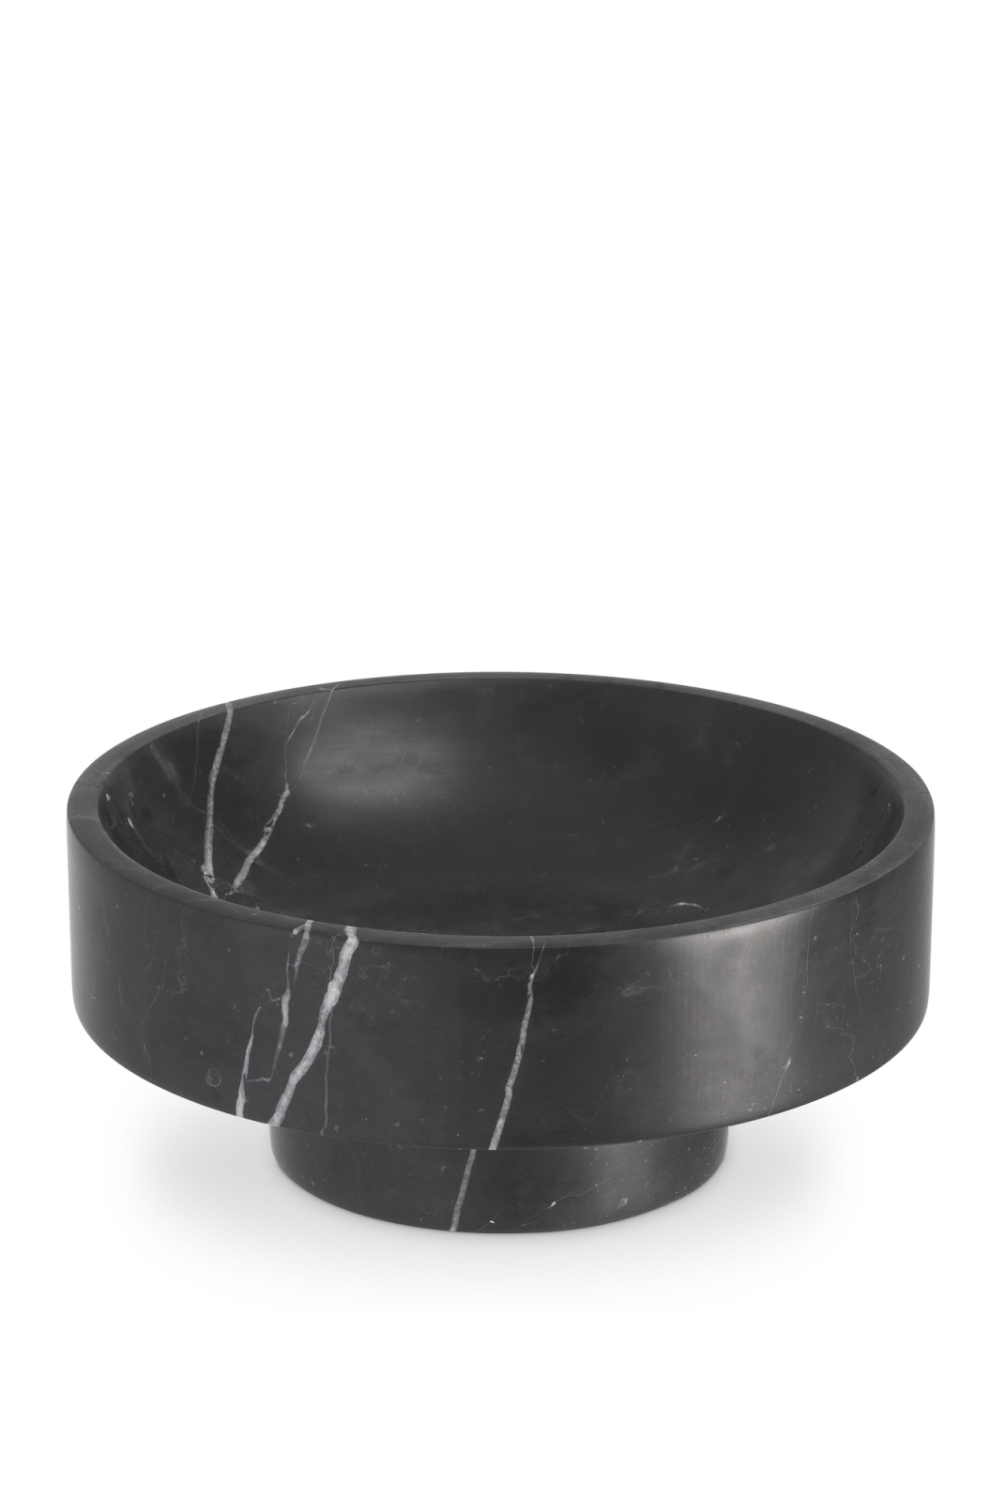 Black Marble Decorative Bowl | Eichholtz Santiago | OROA